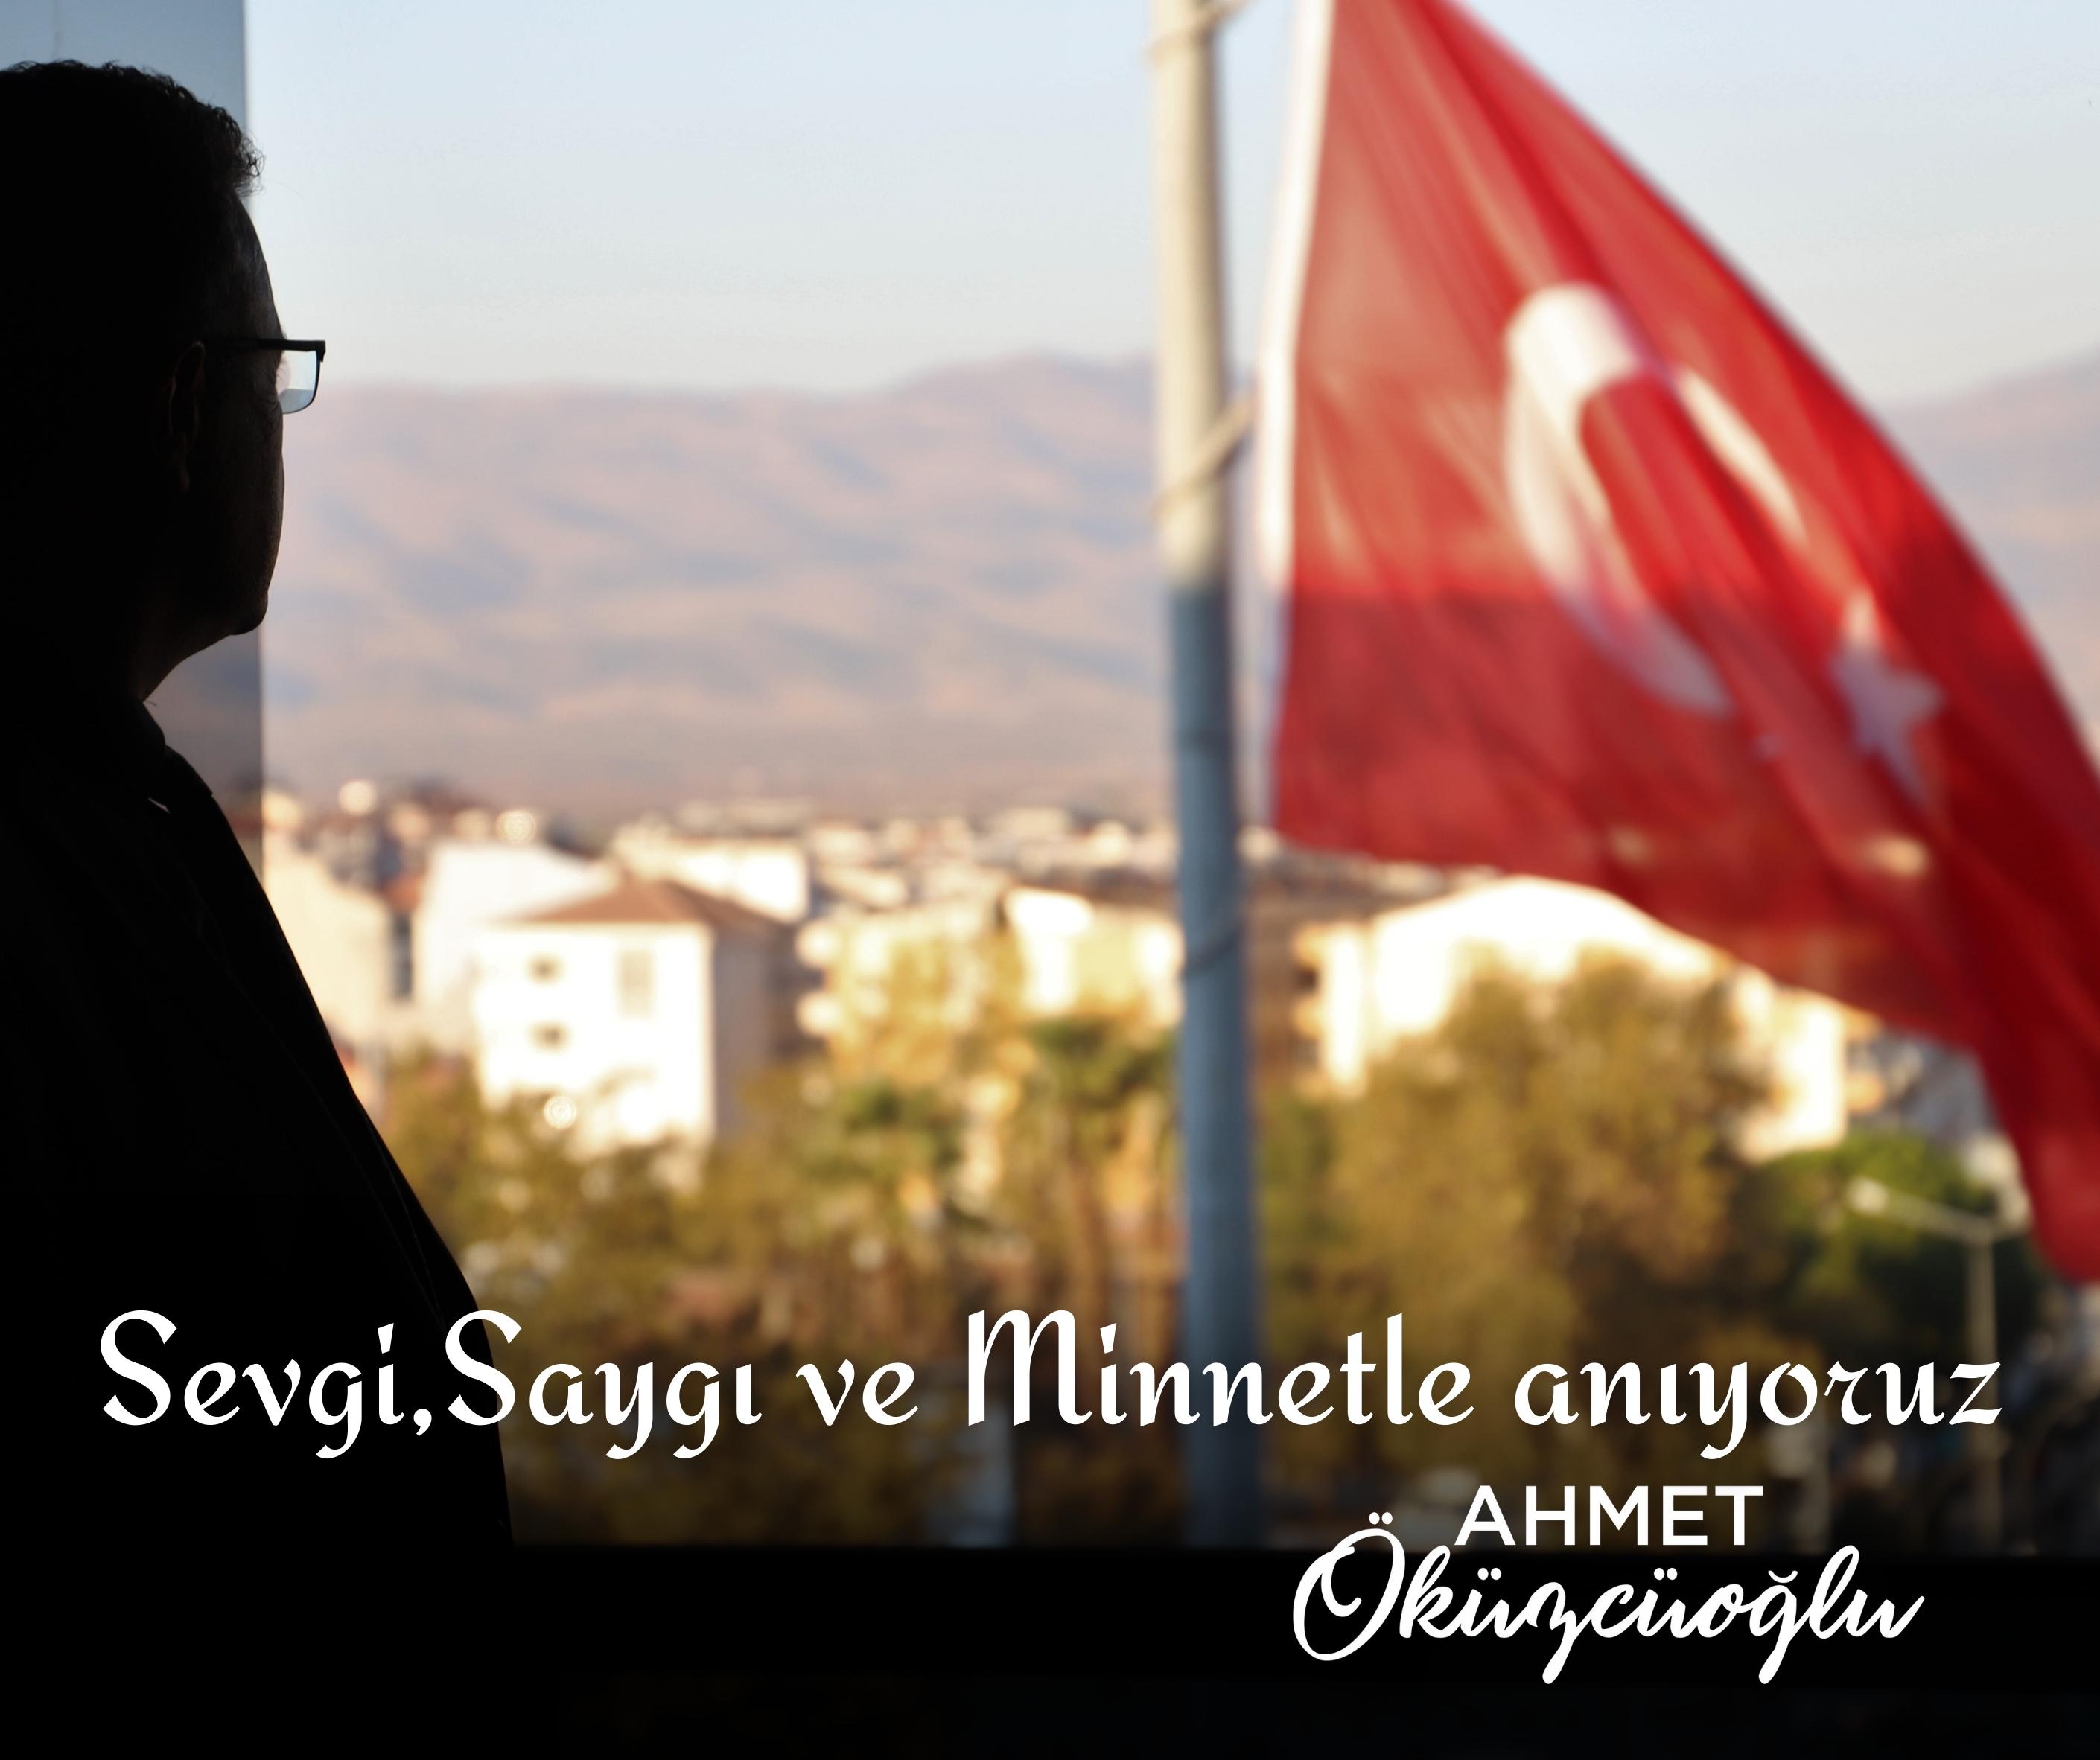 Vefatının 84. yıl dönümünde, Ulu Önderimiz Mustafa Kemal Atatürk'ü sevgi, saygı ve minnetle anıyoruz.